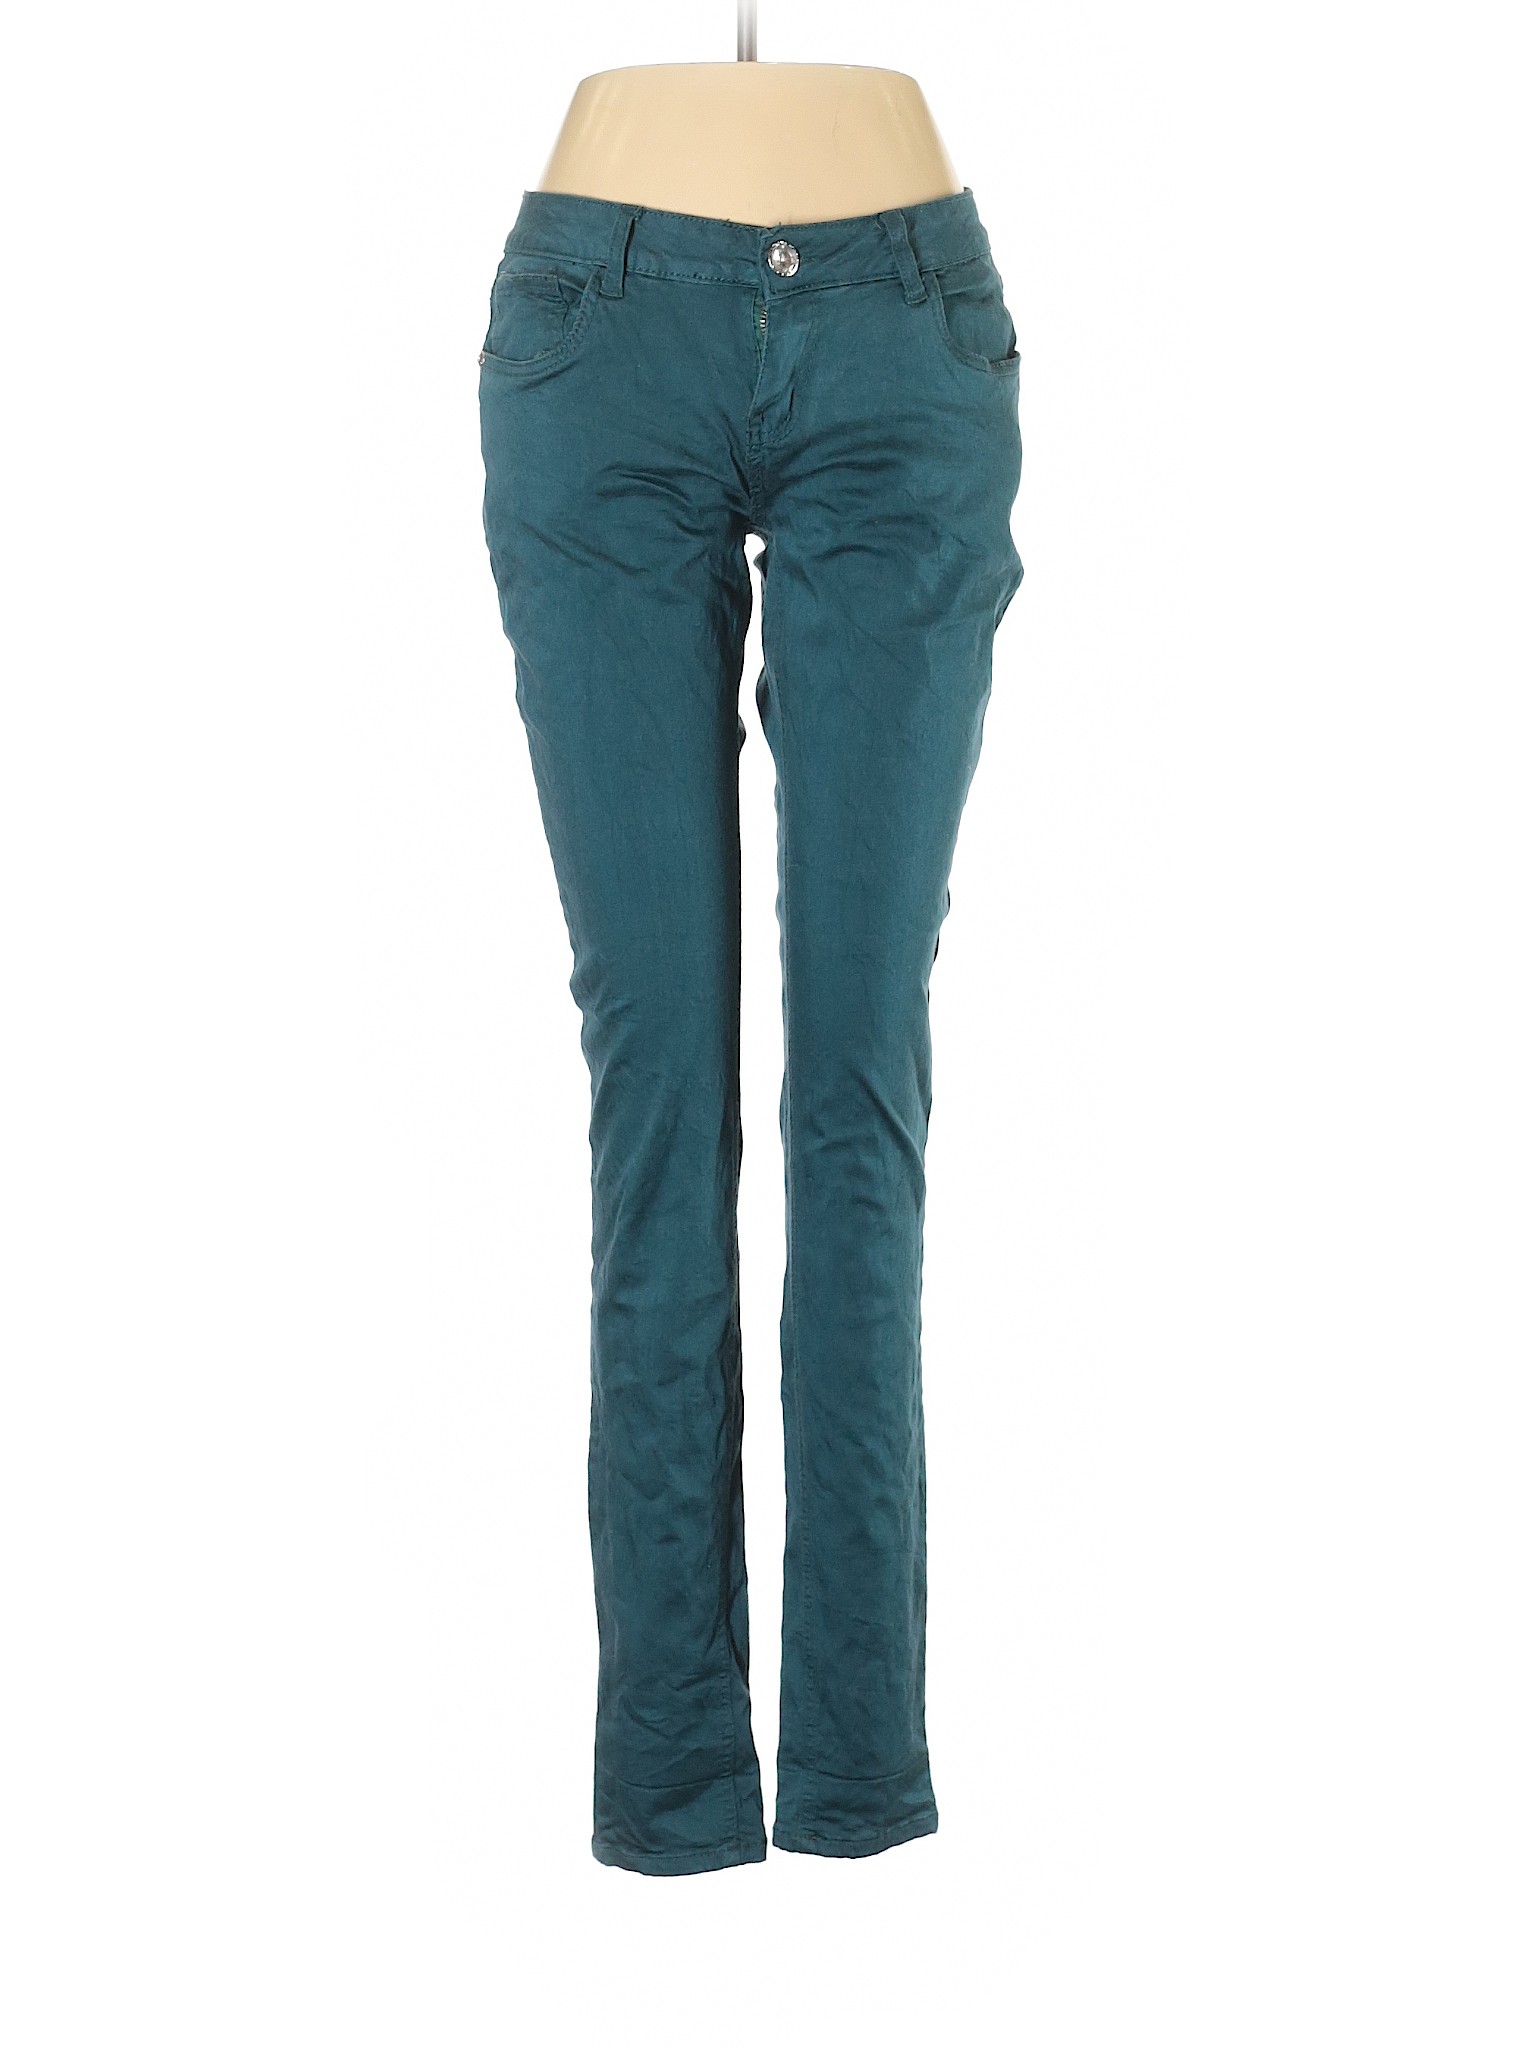 Decoded Women Green Jeans 9 | eBay